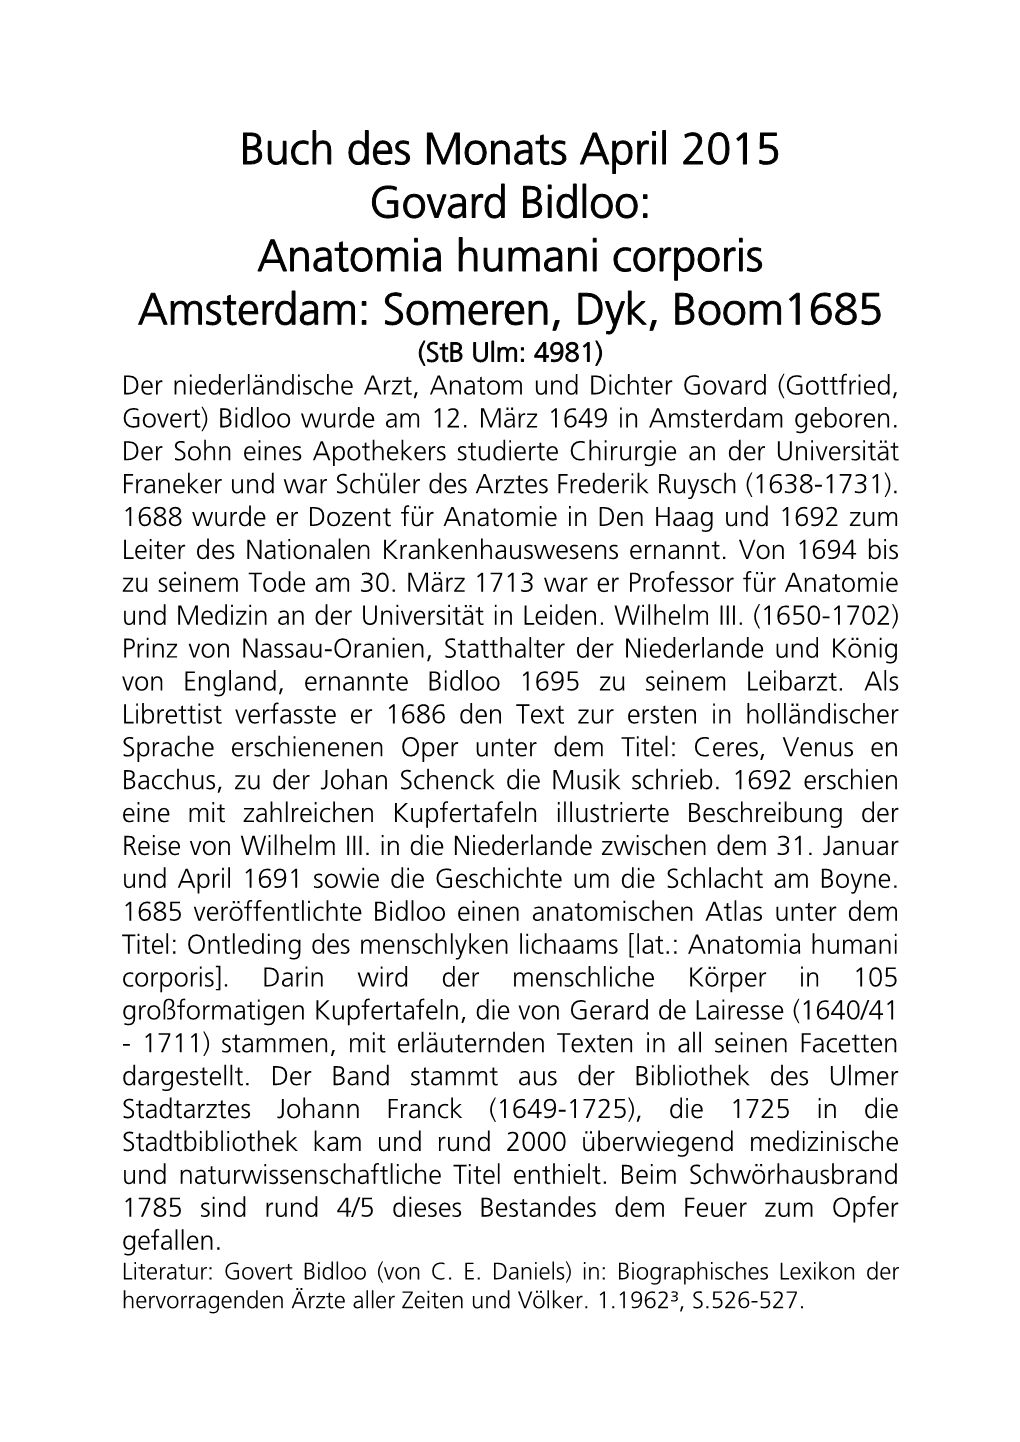 Anatomia Humani Corporis Amsterdam: Someren, Dyk, Boom1685 (Stb Ulm: 4981) Der Niederländische Arzt, Anatom Und Dichter Govard (Gottfried, Govert) Bidloo Wurde Am 12